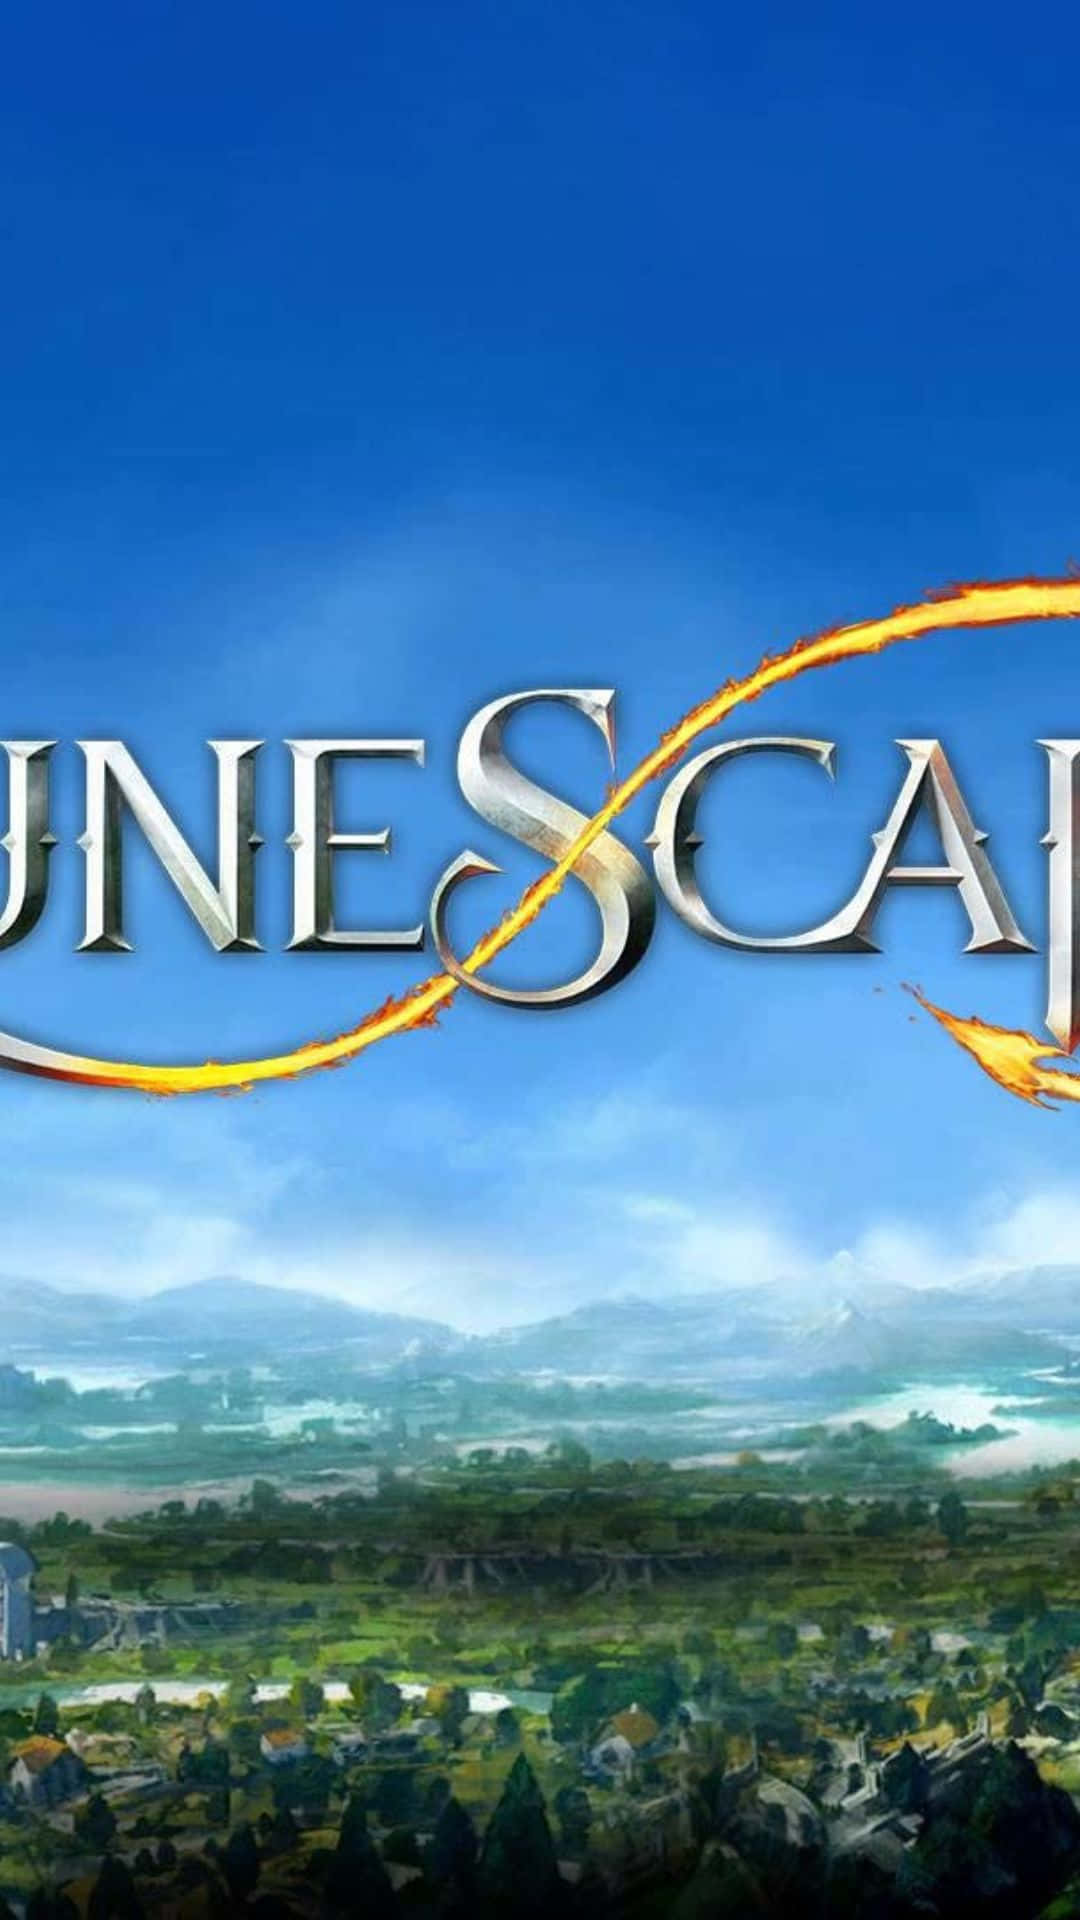 Runescapeoldschool Per Android - Un Classico Videogioco In Arrivo Su Dispositivi Android.